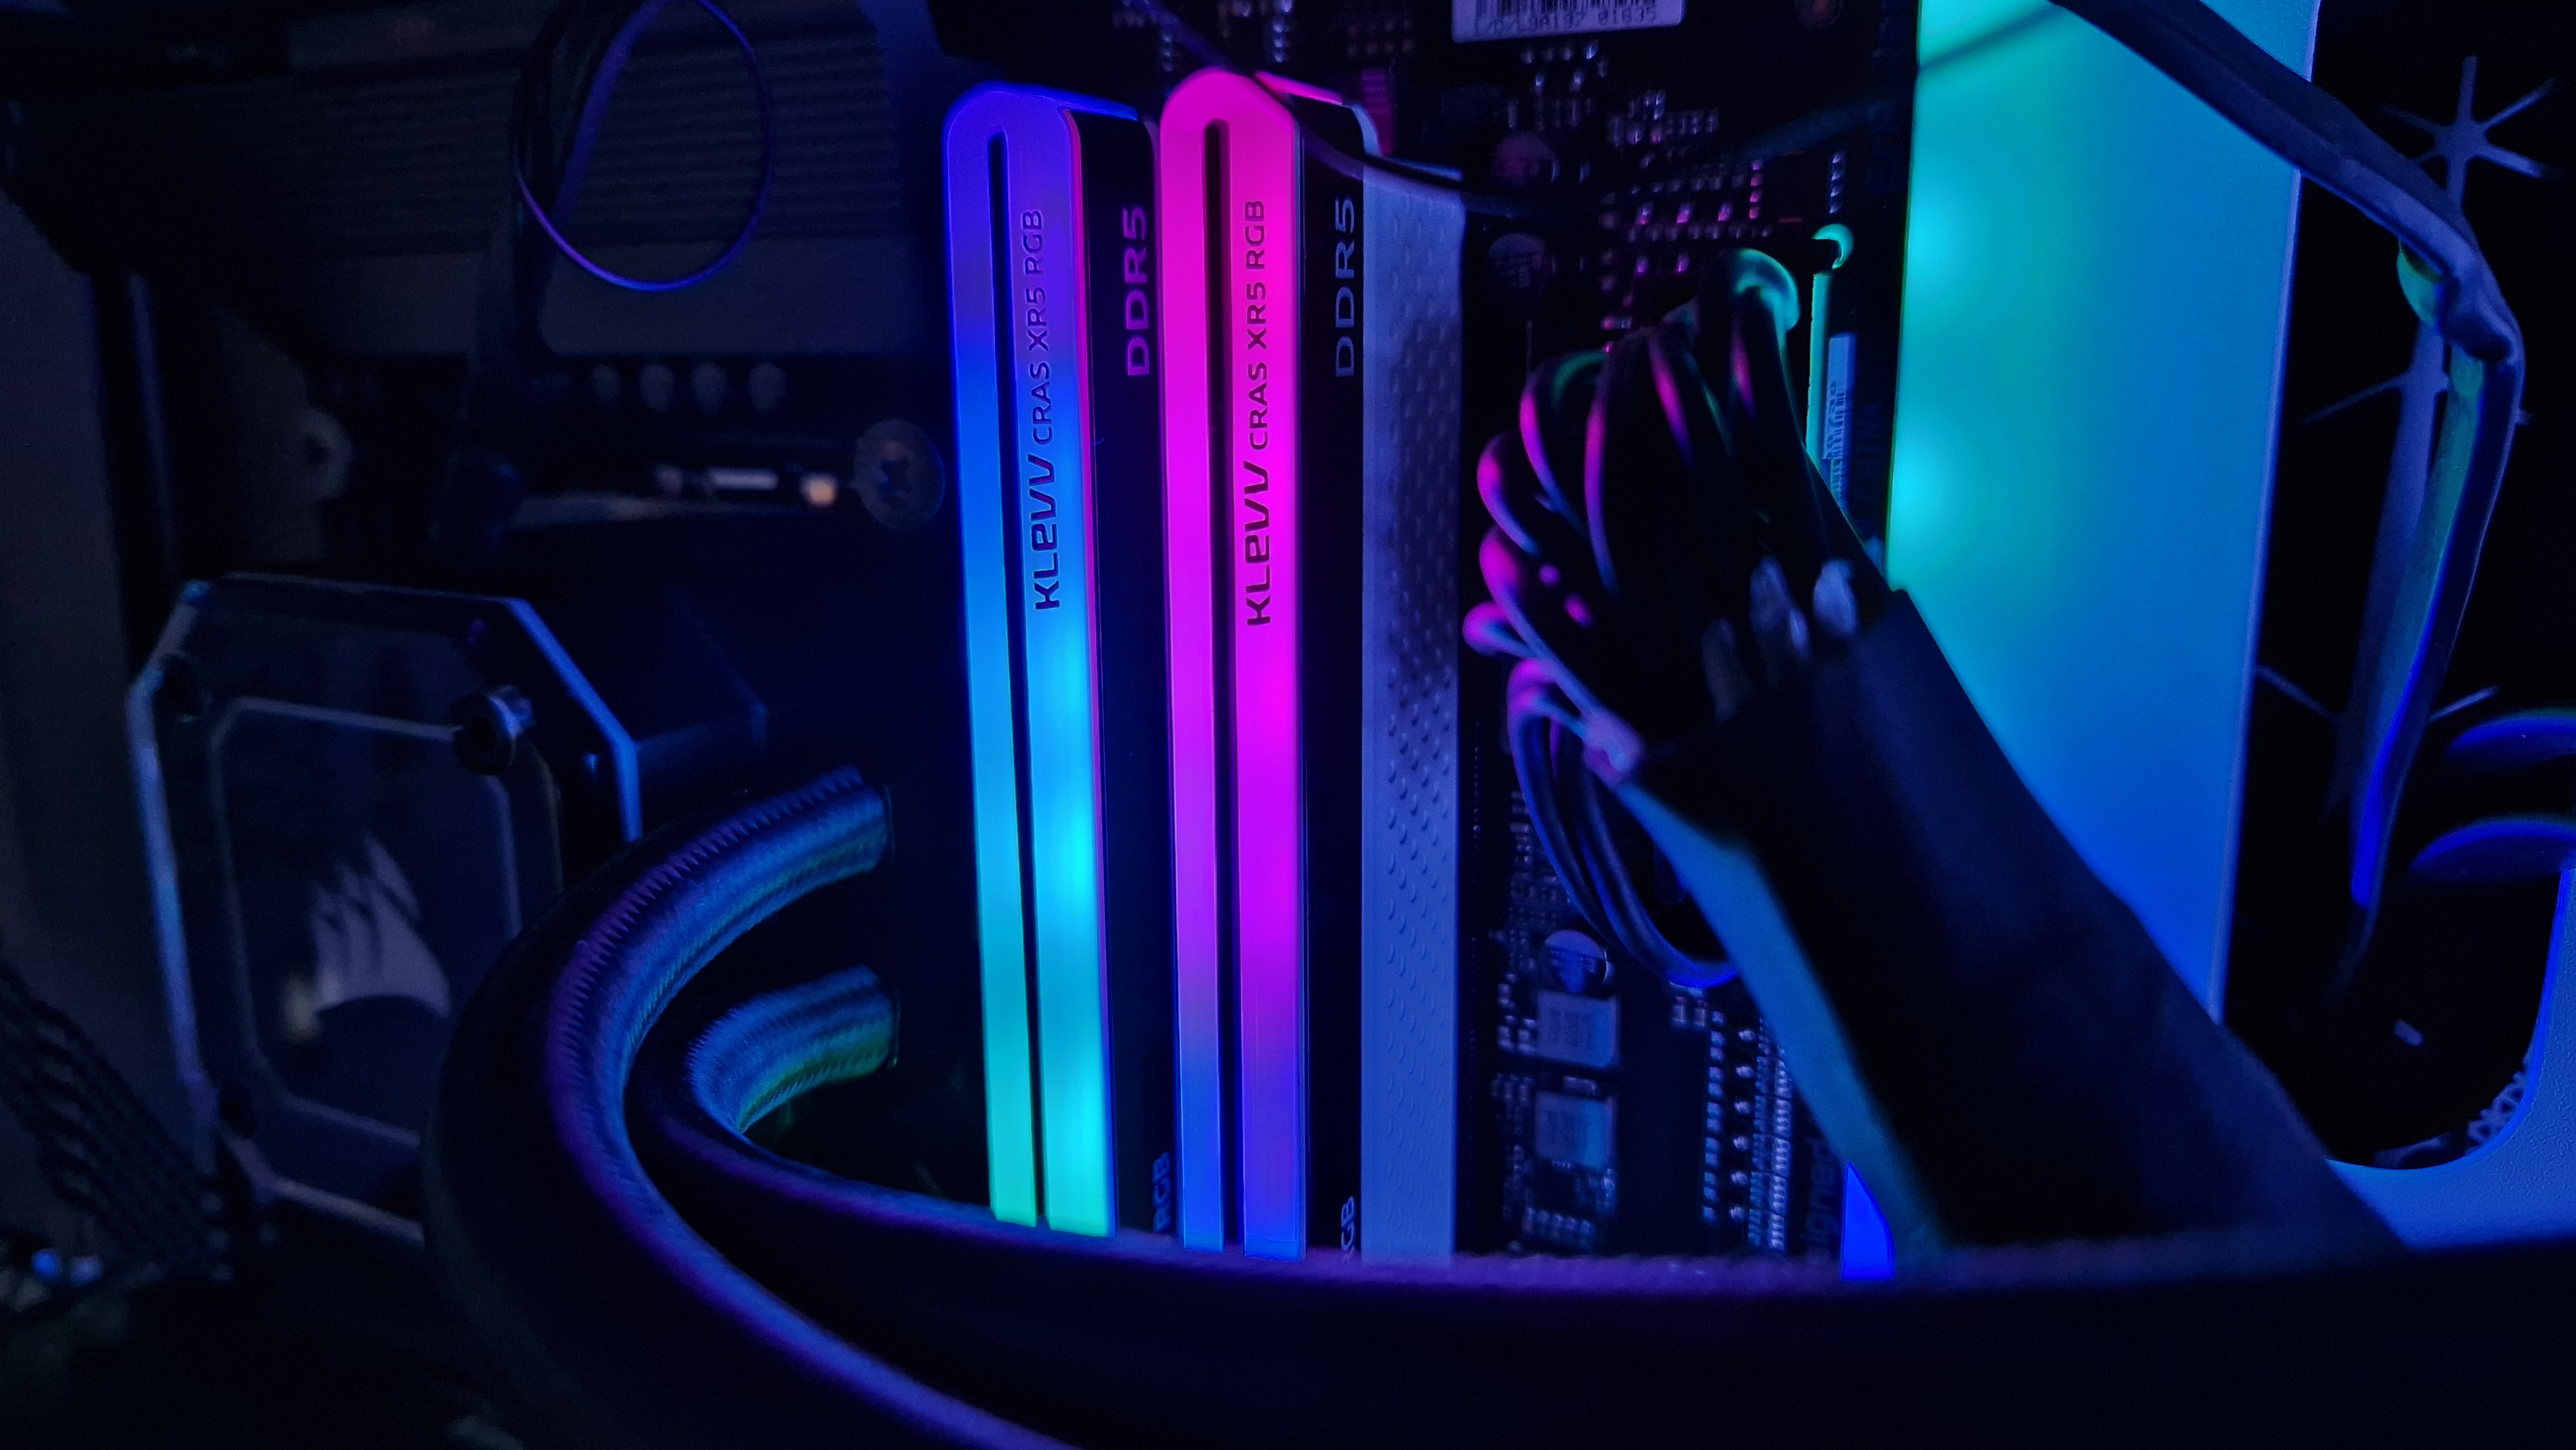 Operační paměť Klevv Cras XR5 RGB DDR5 s modrým a růžovým RGB osvětlením při instalaci do herního počítače